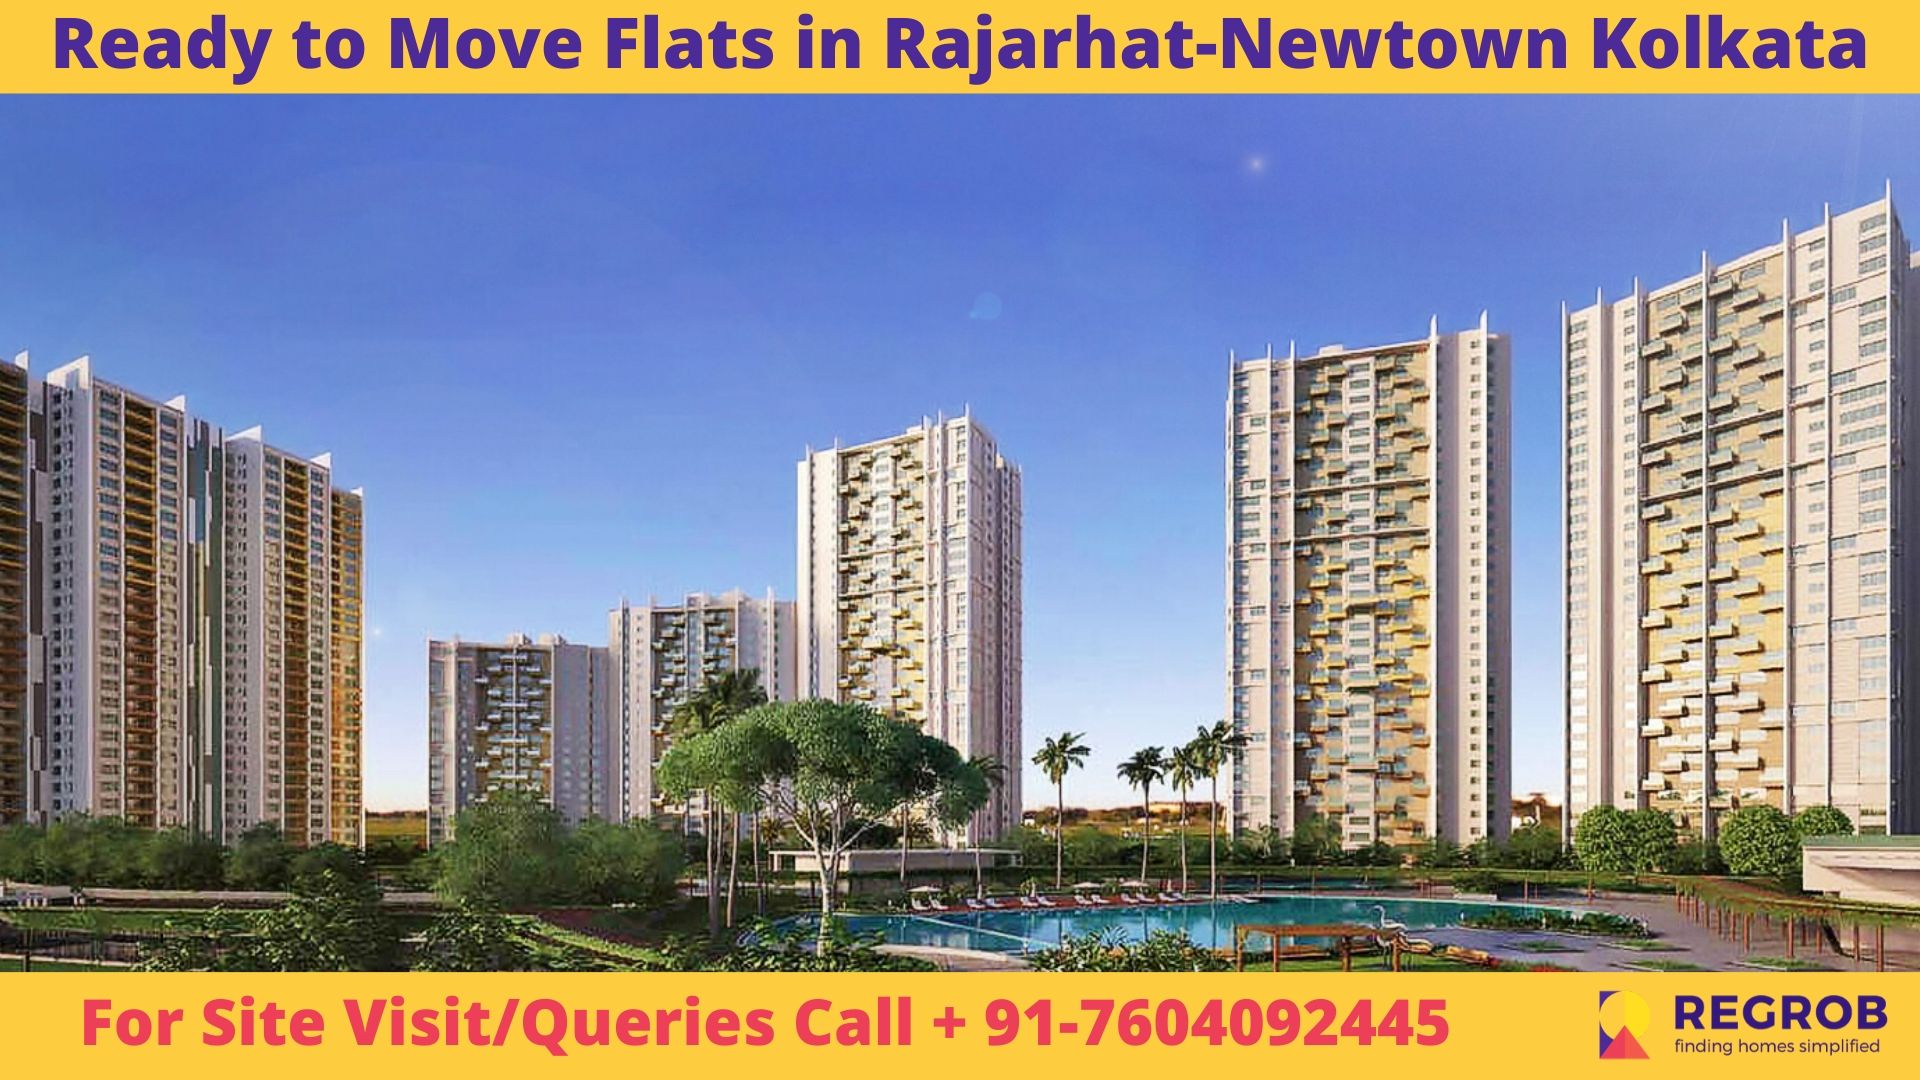 Ready to Move Flats in Rajarhat-Newtown Kolkata